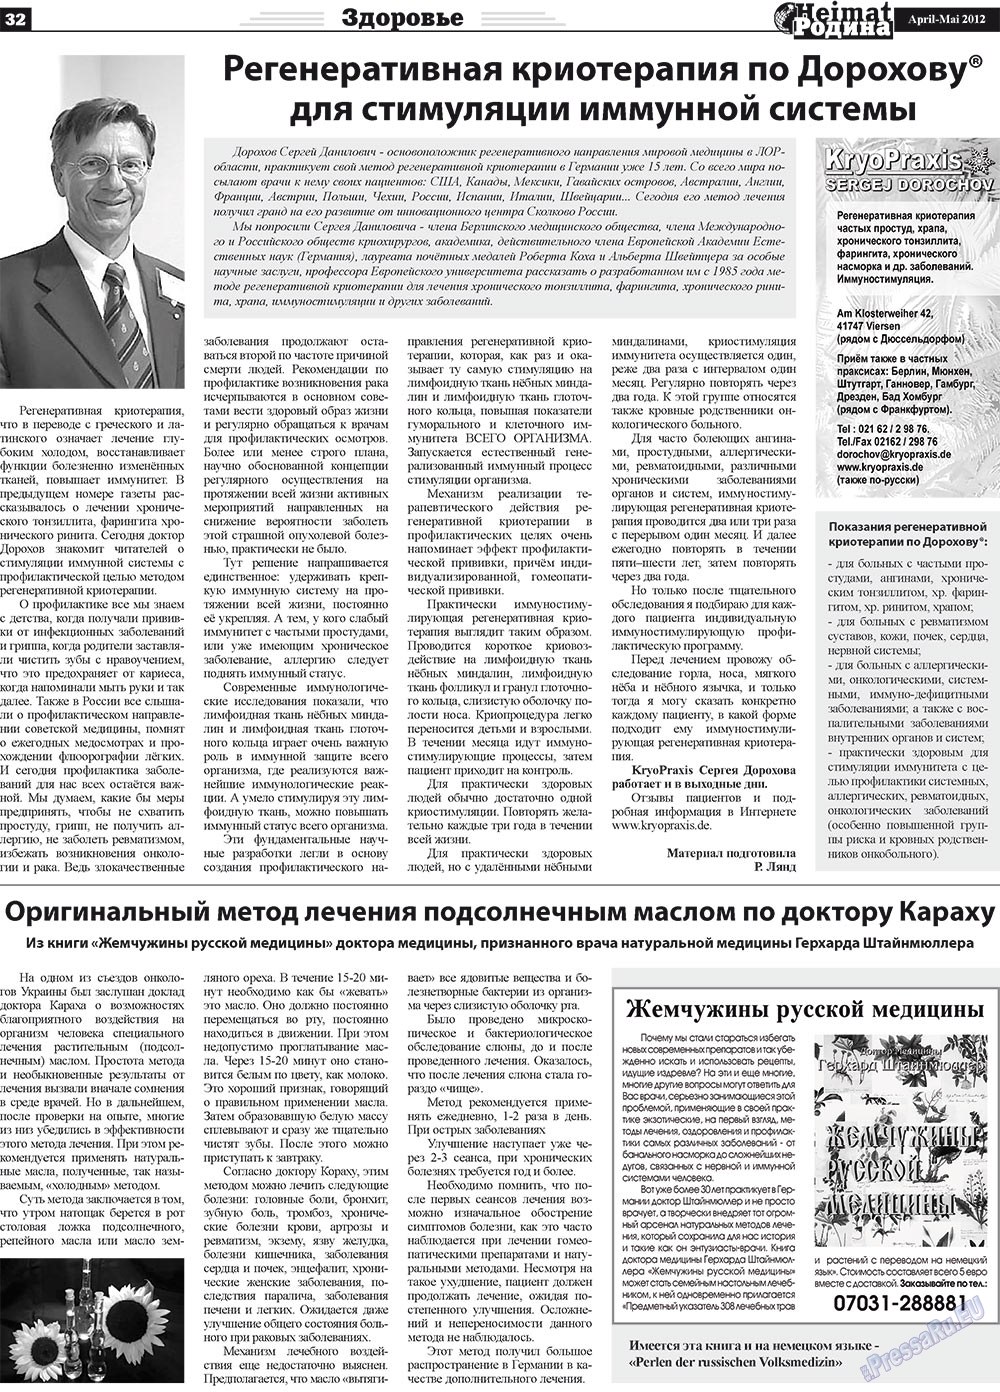 Heimat-Родина (газета). 2012 год, номер 4, стр. 32